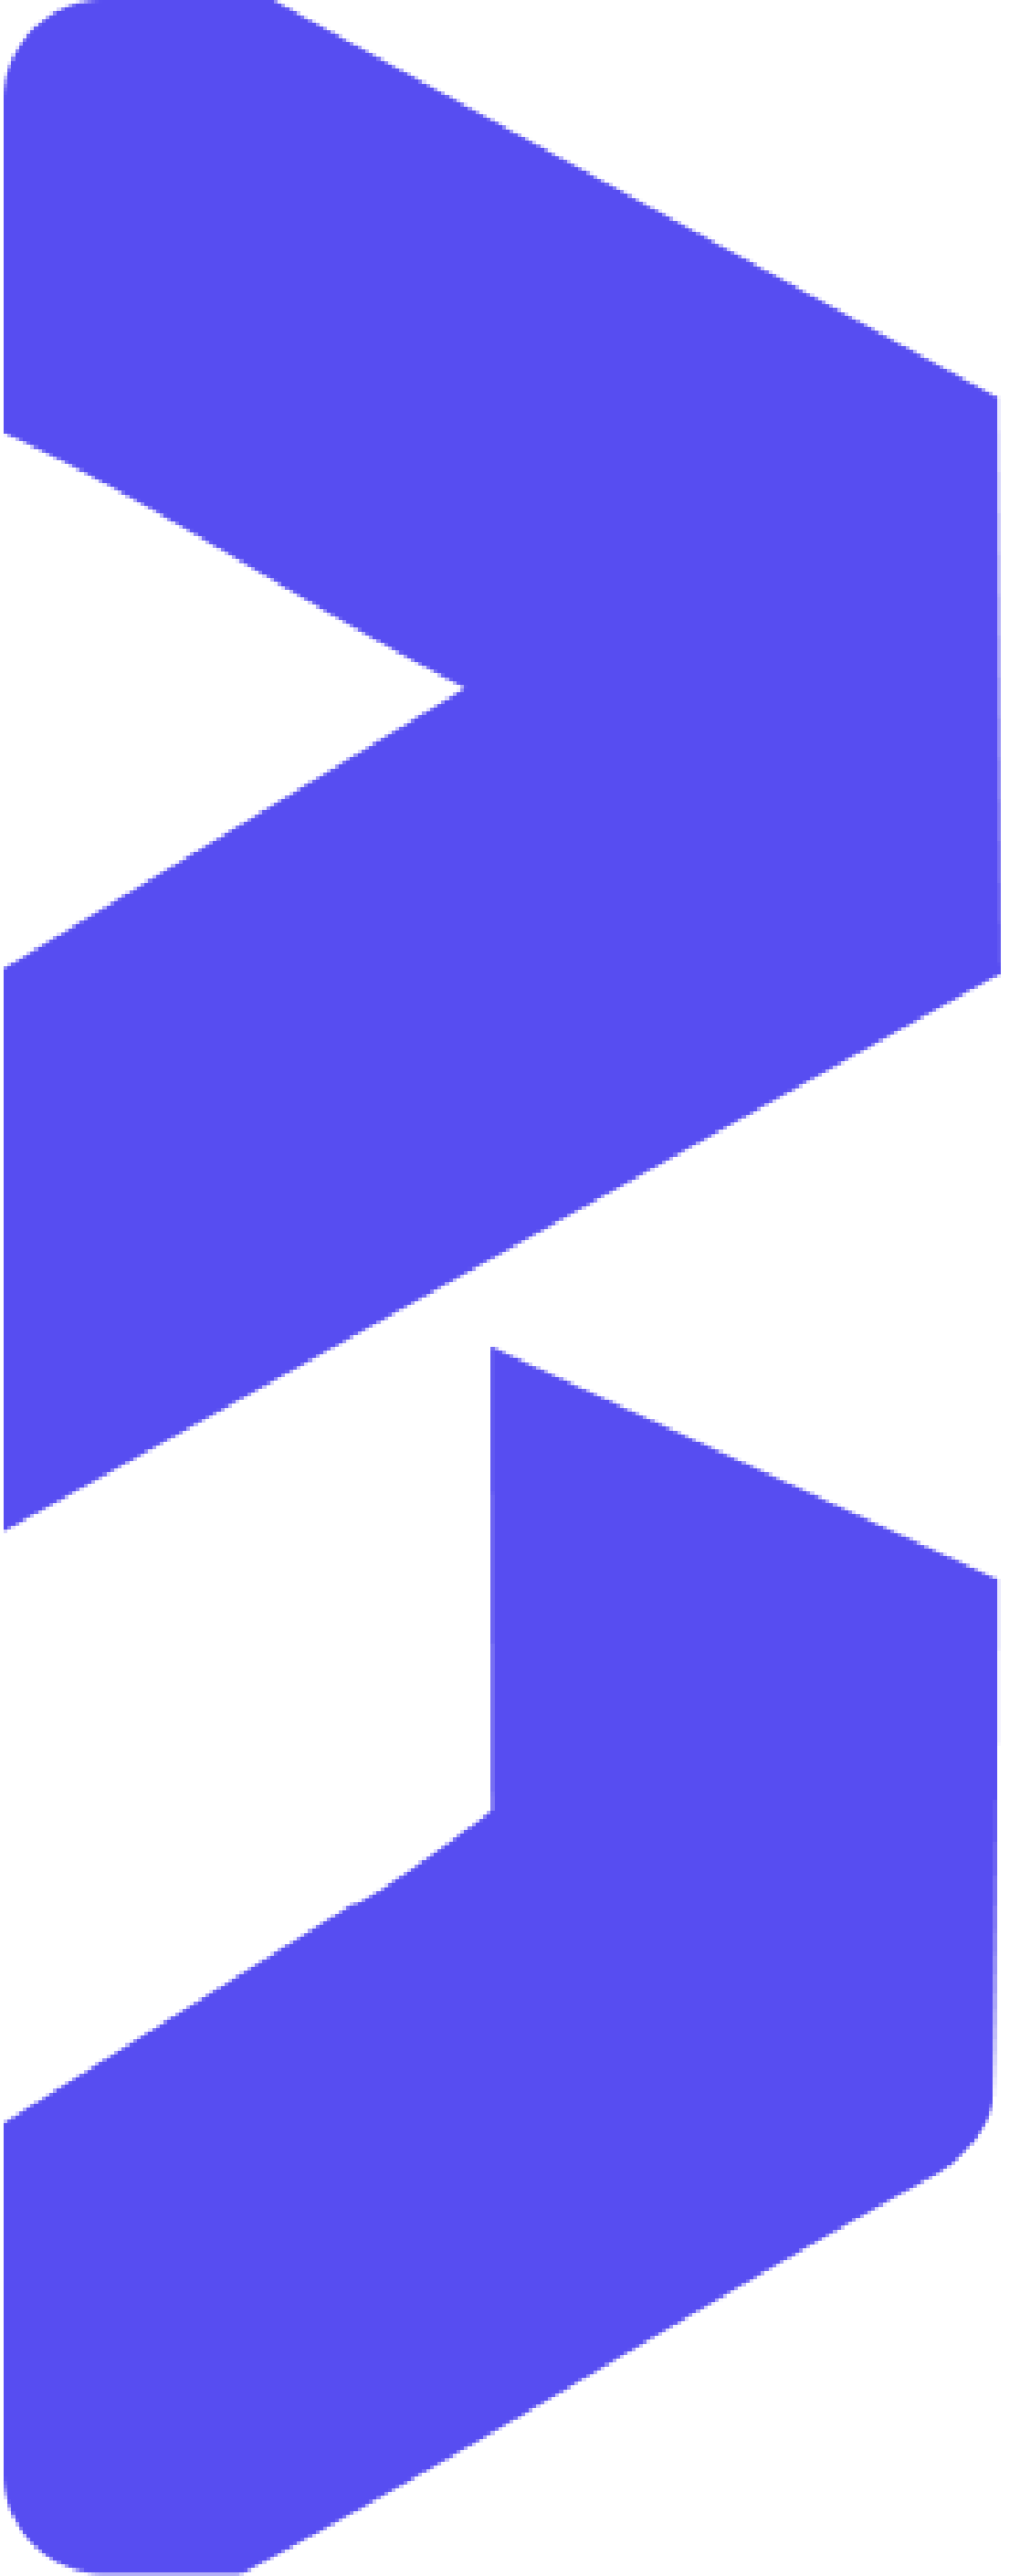 bootcampku logo